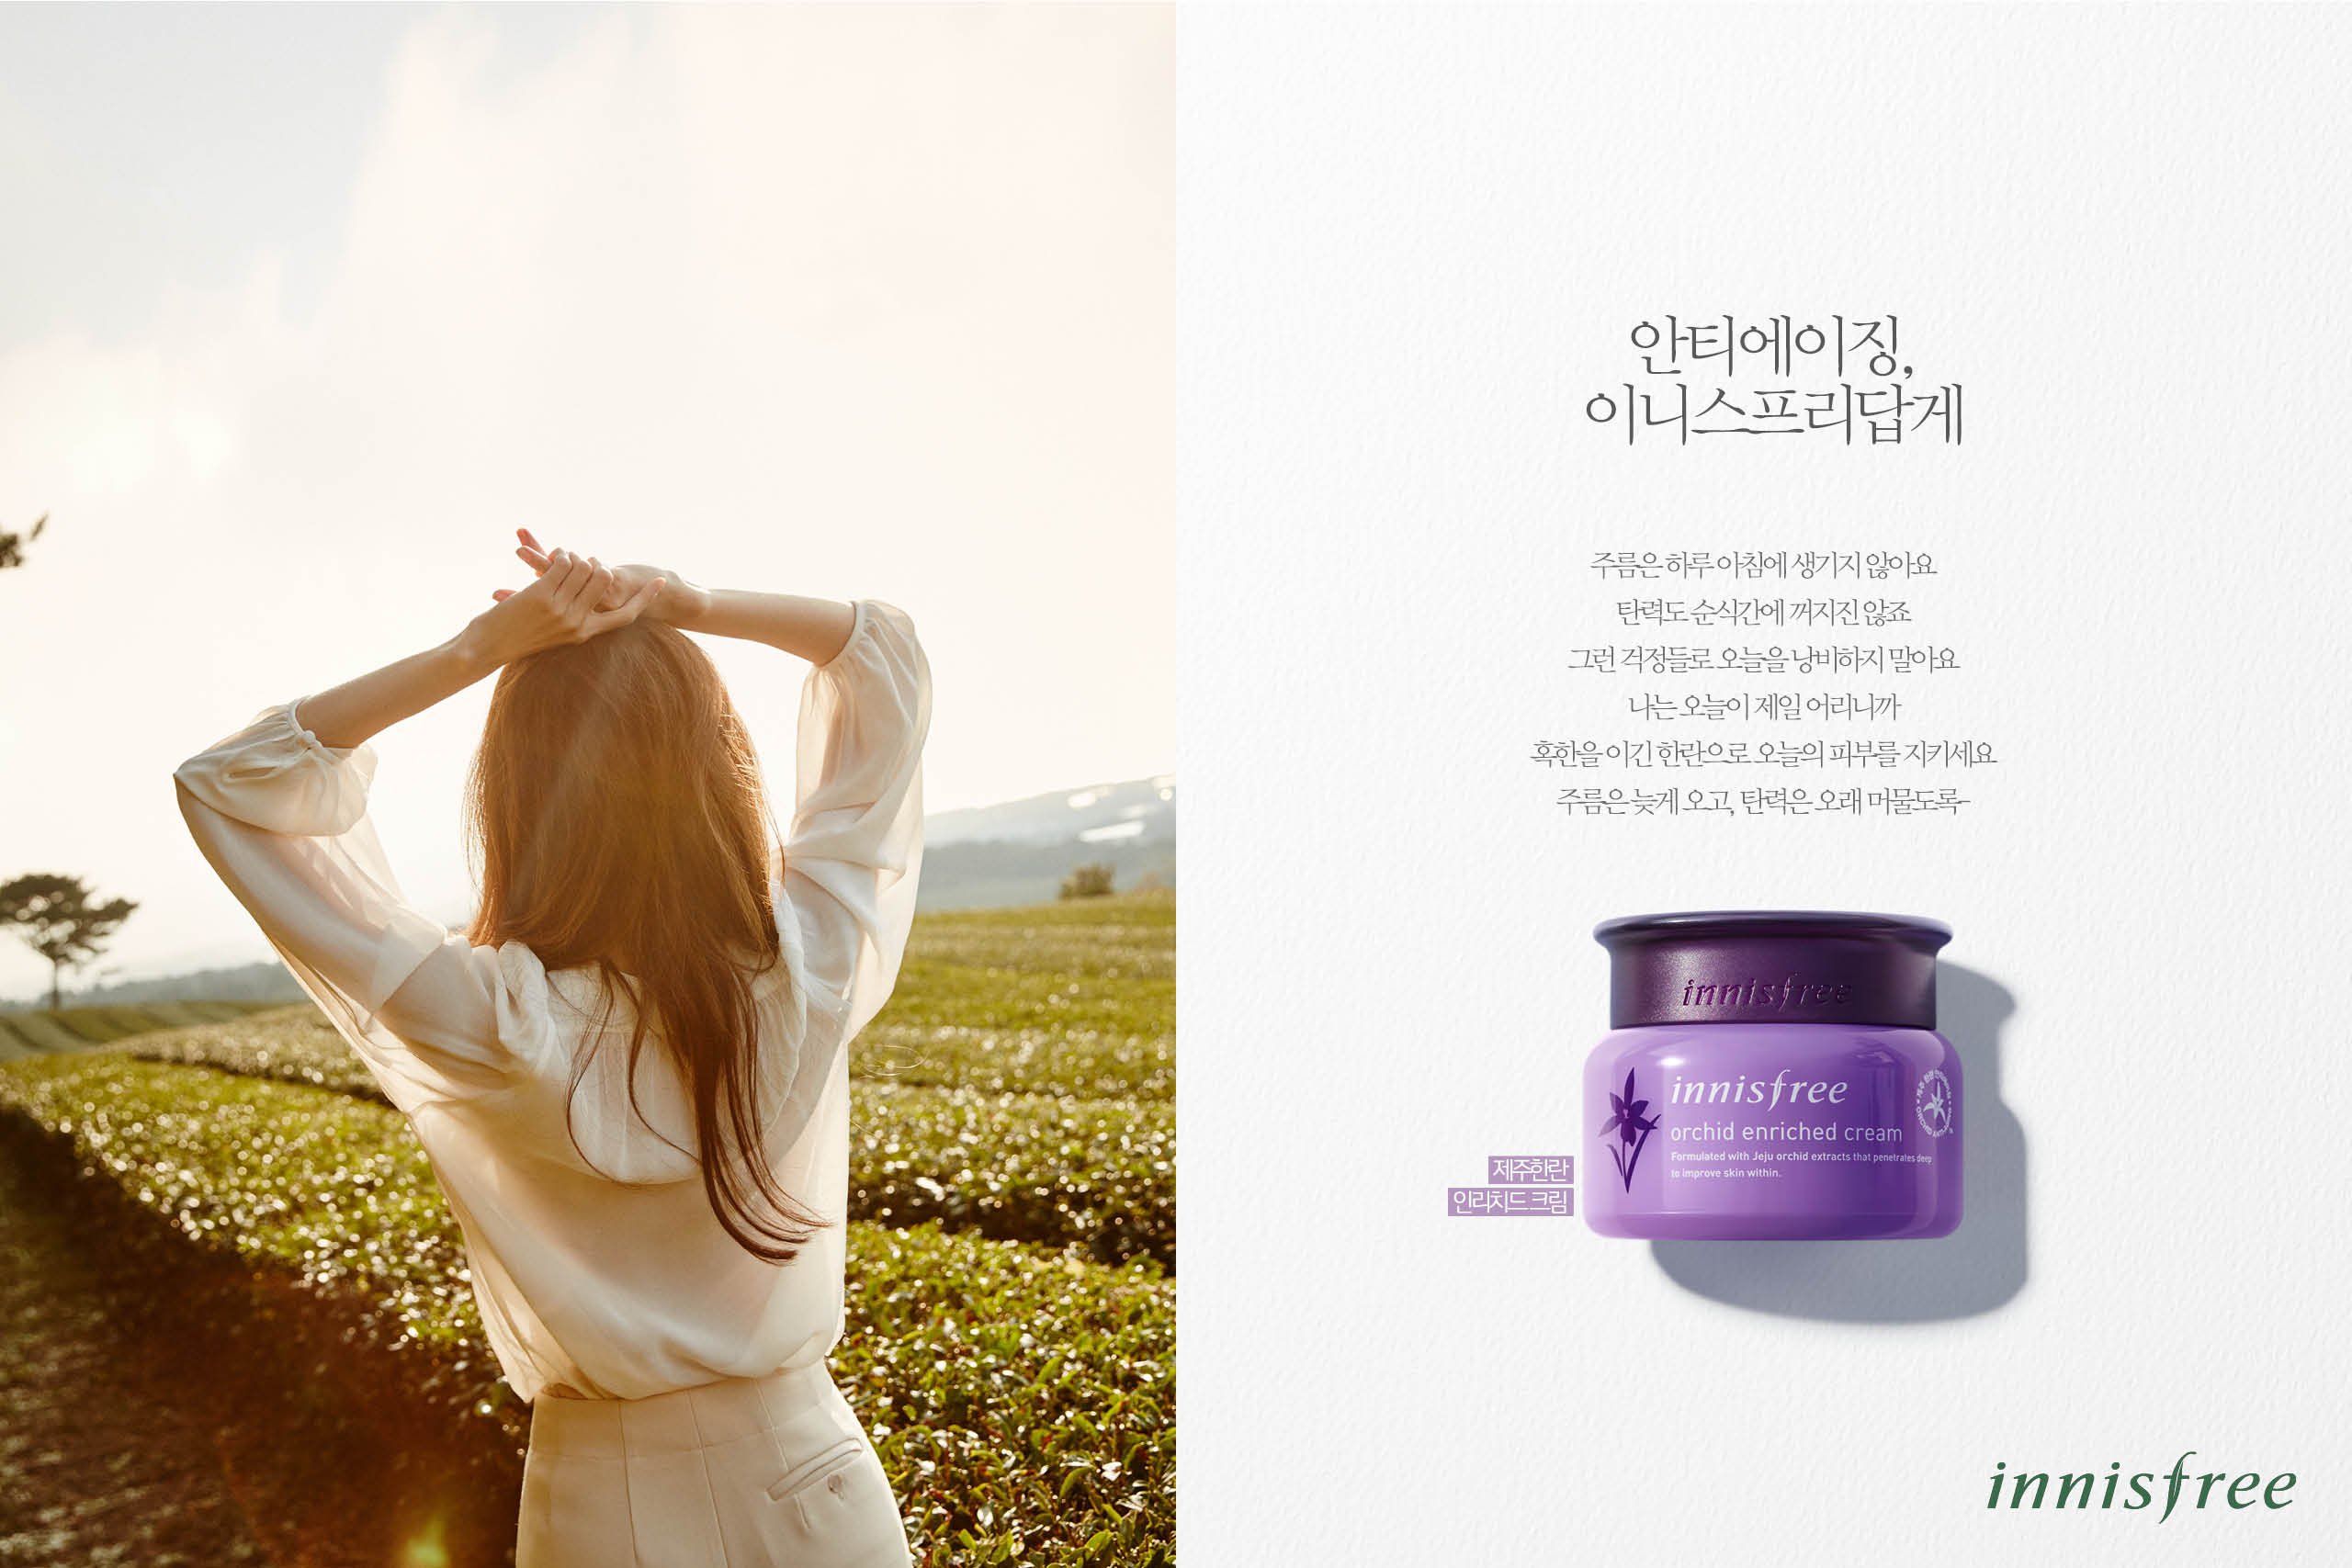 [OTHER][21-07-2012]Hình ảnh mới nhất từ thương hiệu "Innisfree" của YoonA - Page 14 GfN2PKMcX1-3000x3000